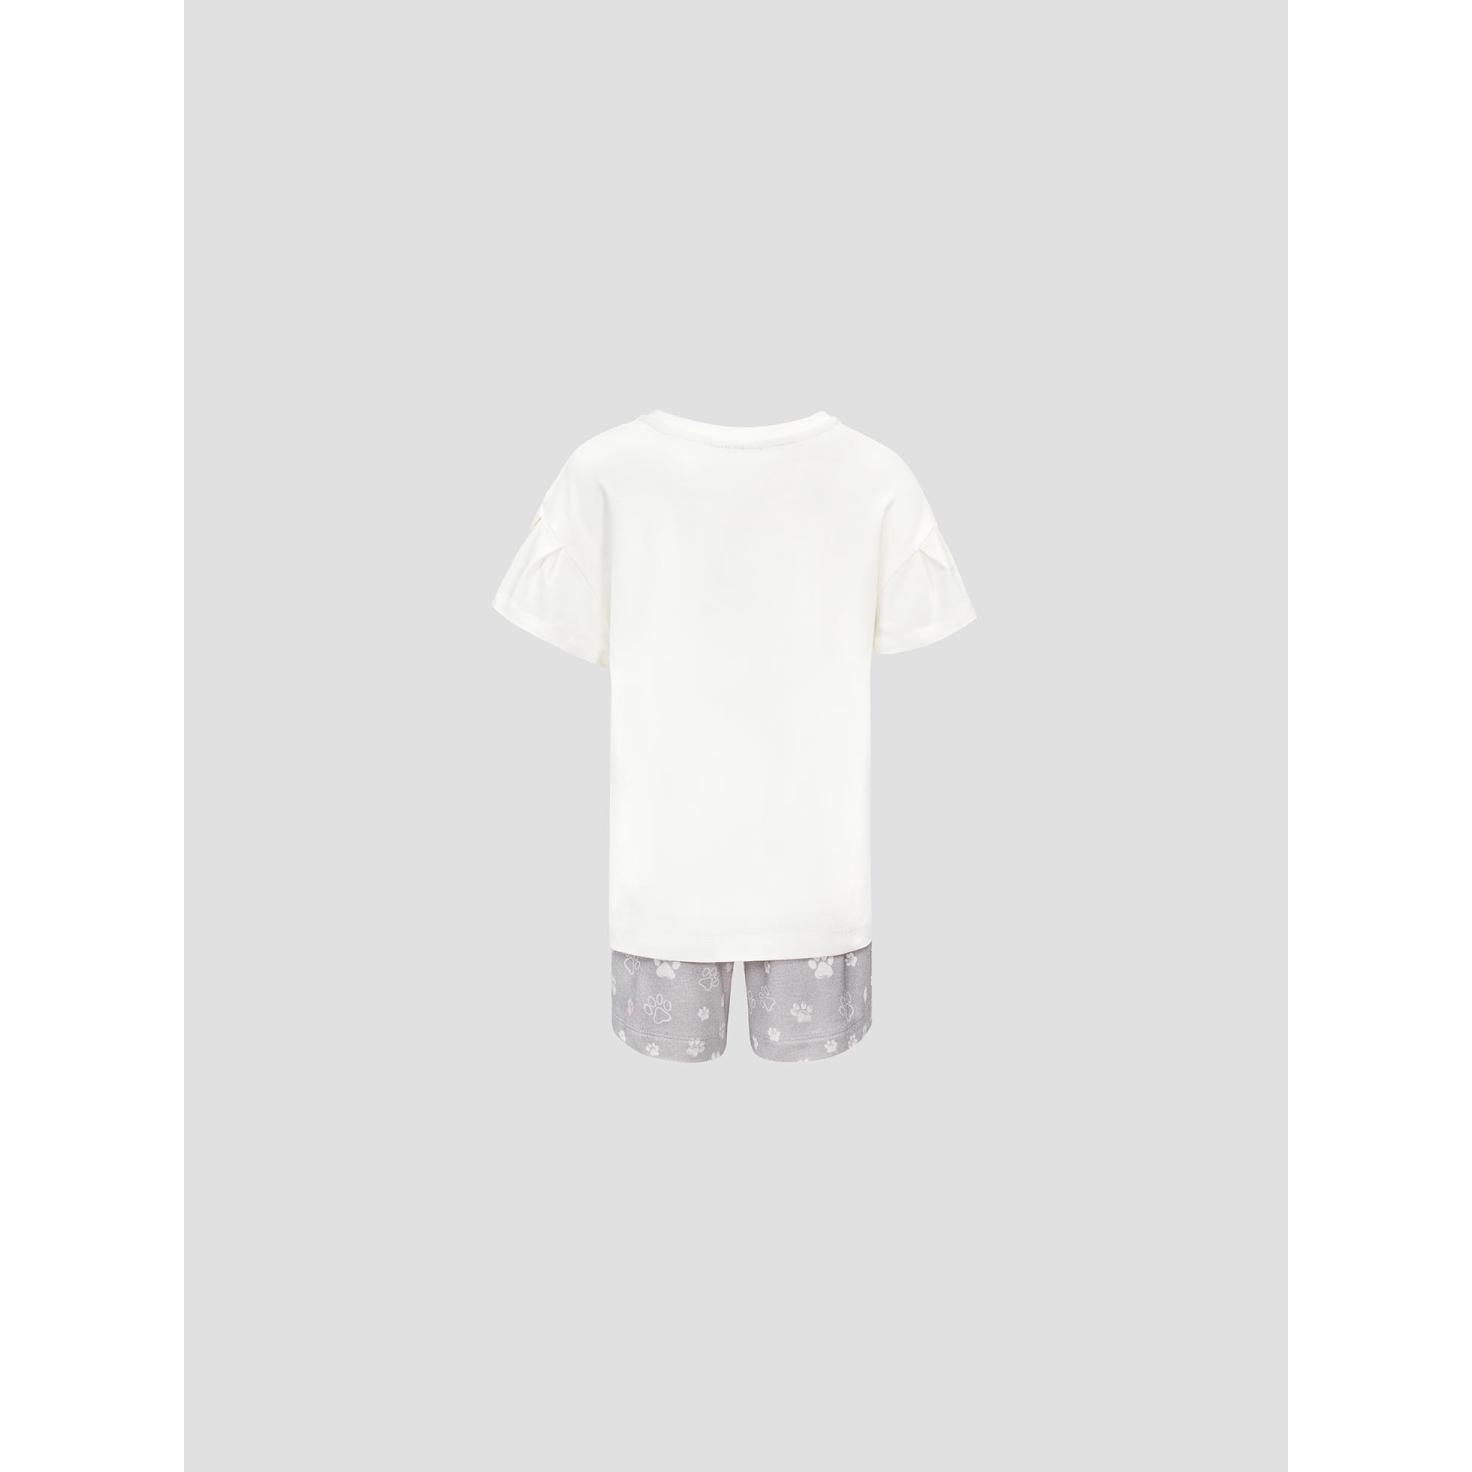 Пижама для девочек Kids by togas Китти бело-серая 92-98 см, цвет белый, размер 92-98 см - фото 2